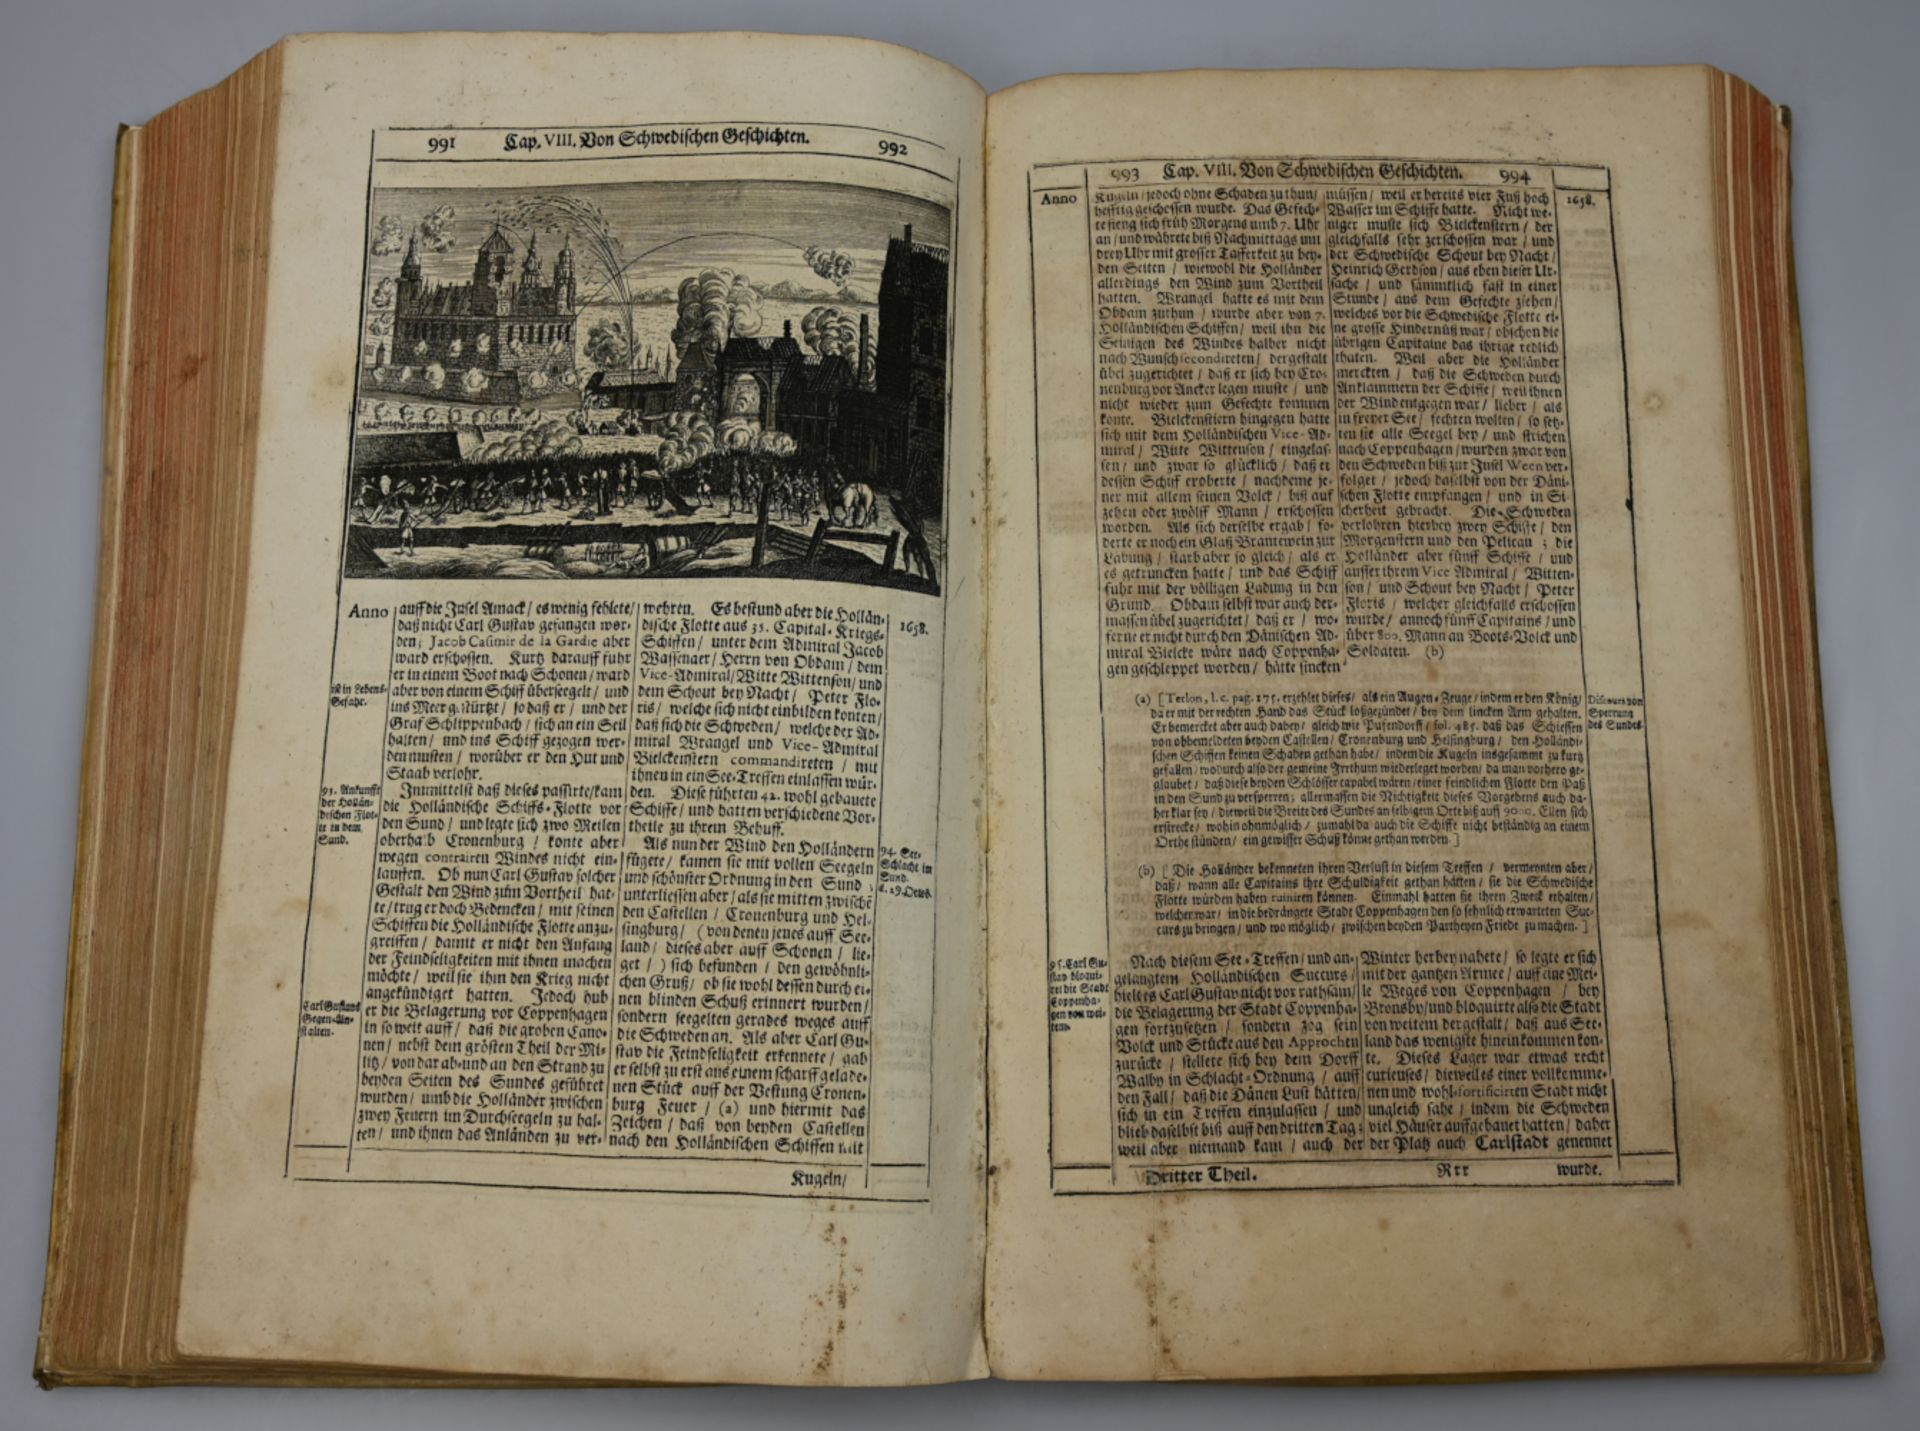 1 Buch "Allgemeine Schau-Bühne der Welt" von Hiob LUDOLF, Frankfurt am Main 1713, dritter Teil, z.T. - Image 3 of 3